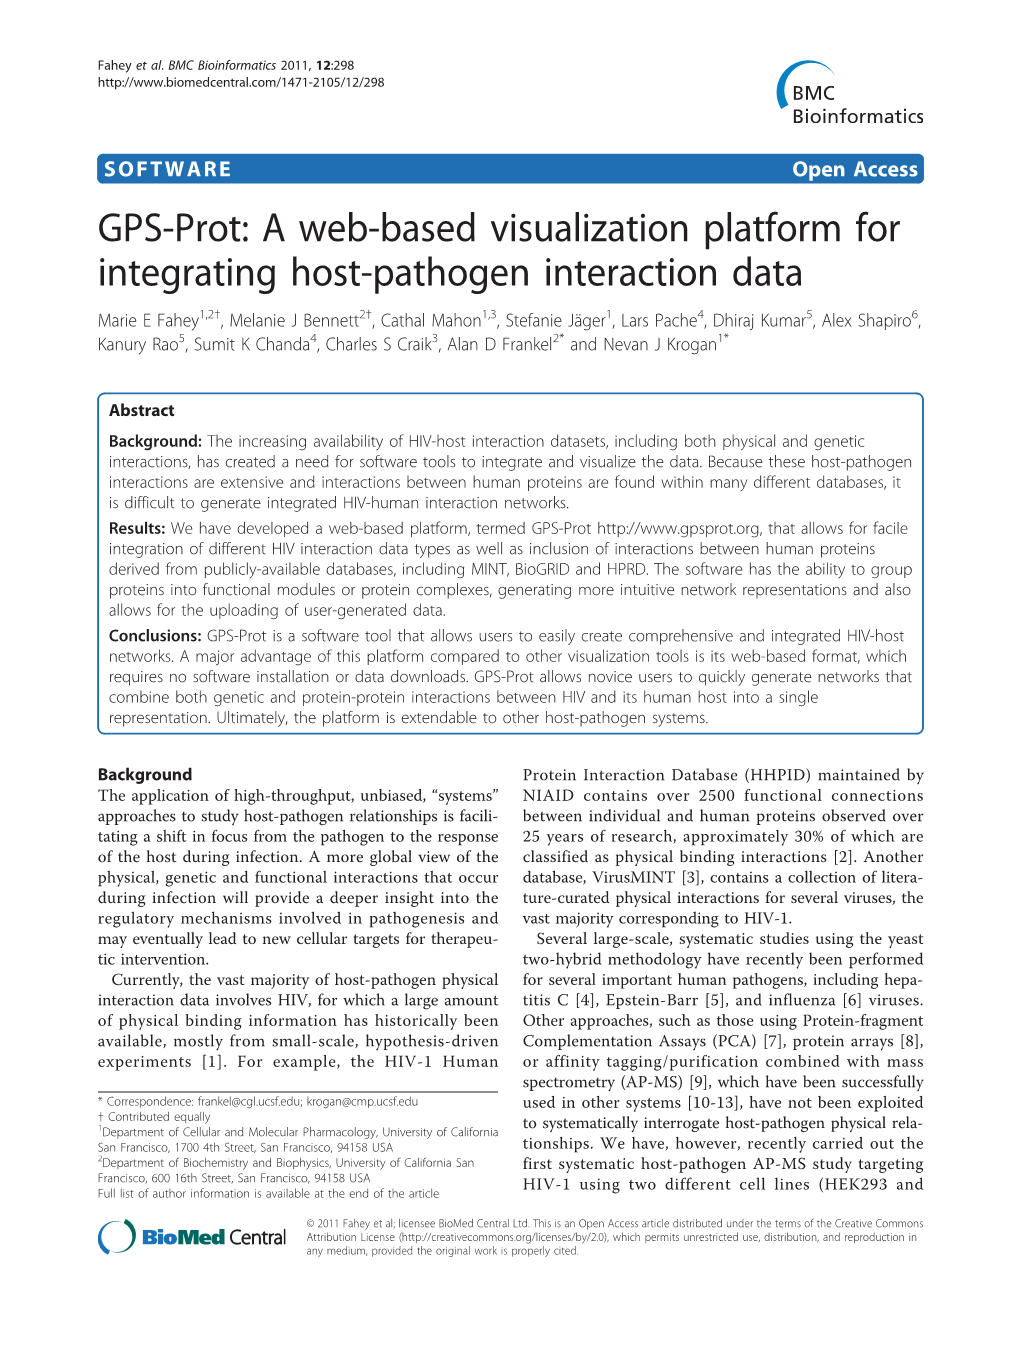 A Web-Based Visualization Platform for Integrating Host-Pathogen